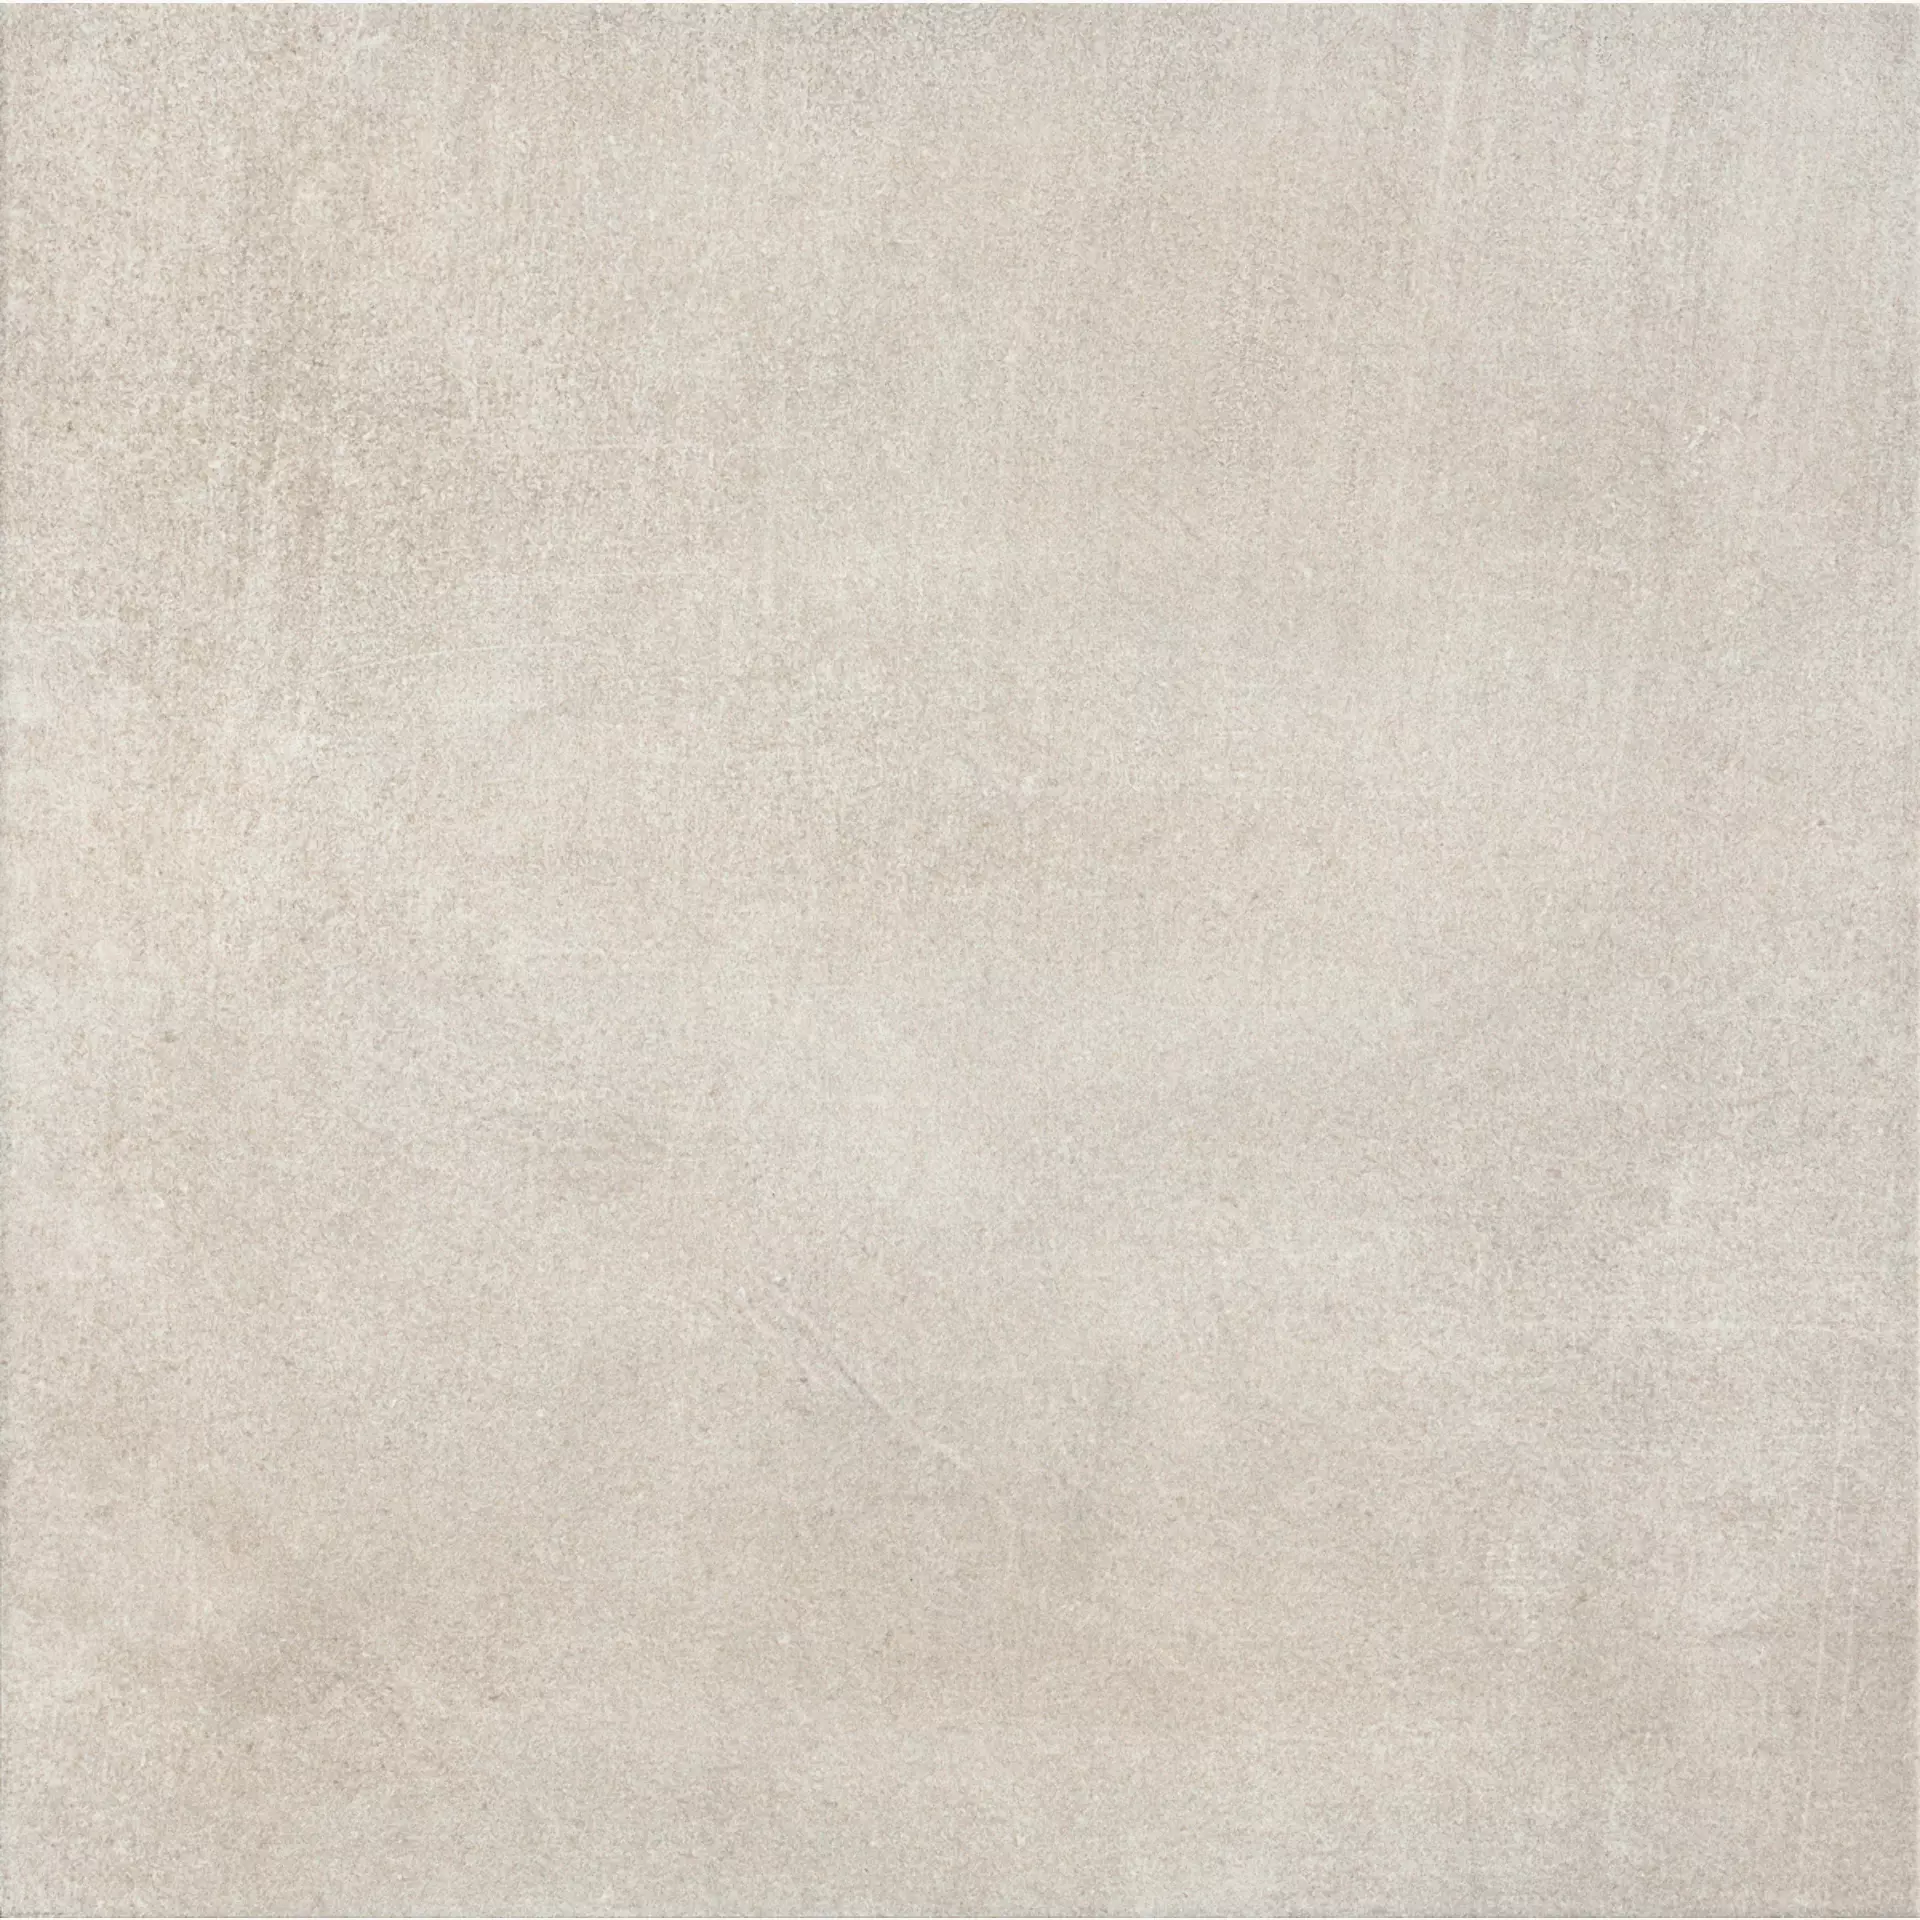 Marazzi Dust White Naturale – Matt MMT6 33,3x33,3cm 8mm